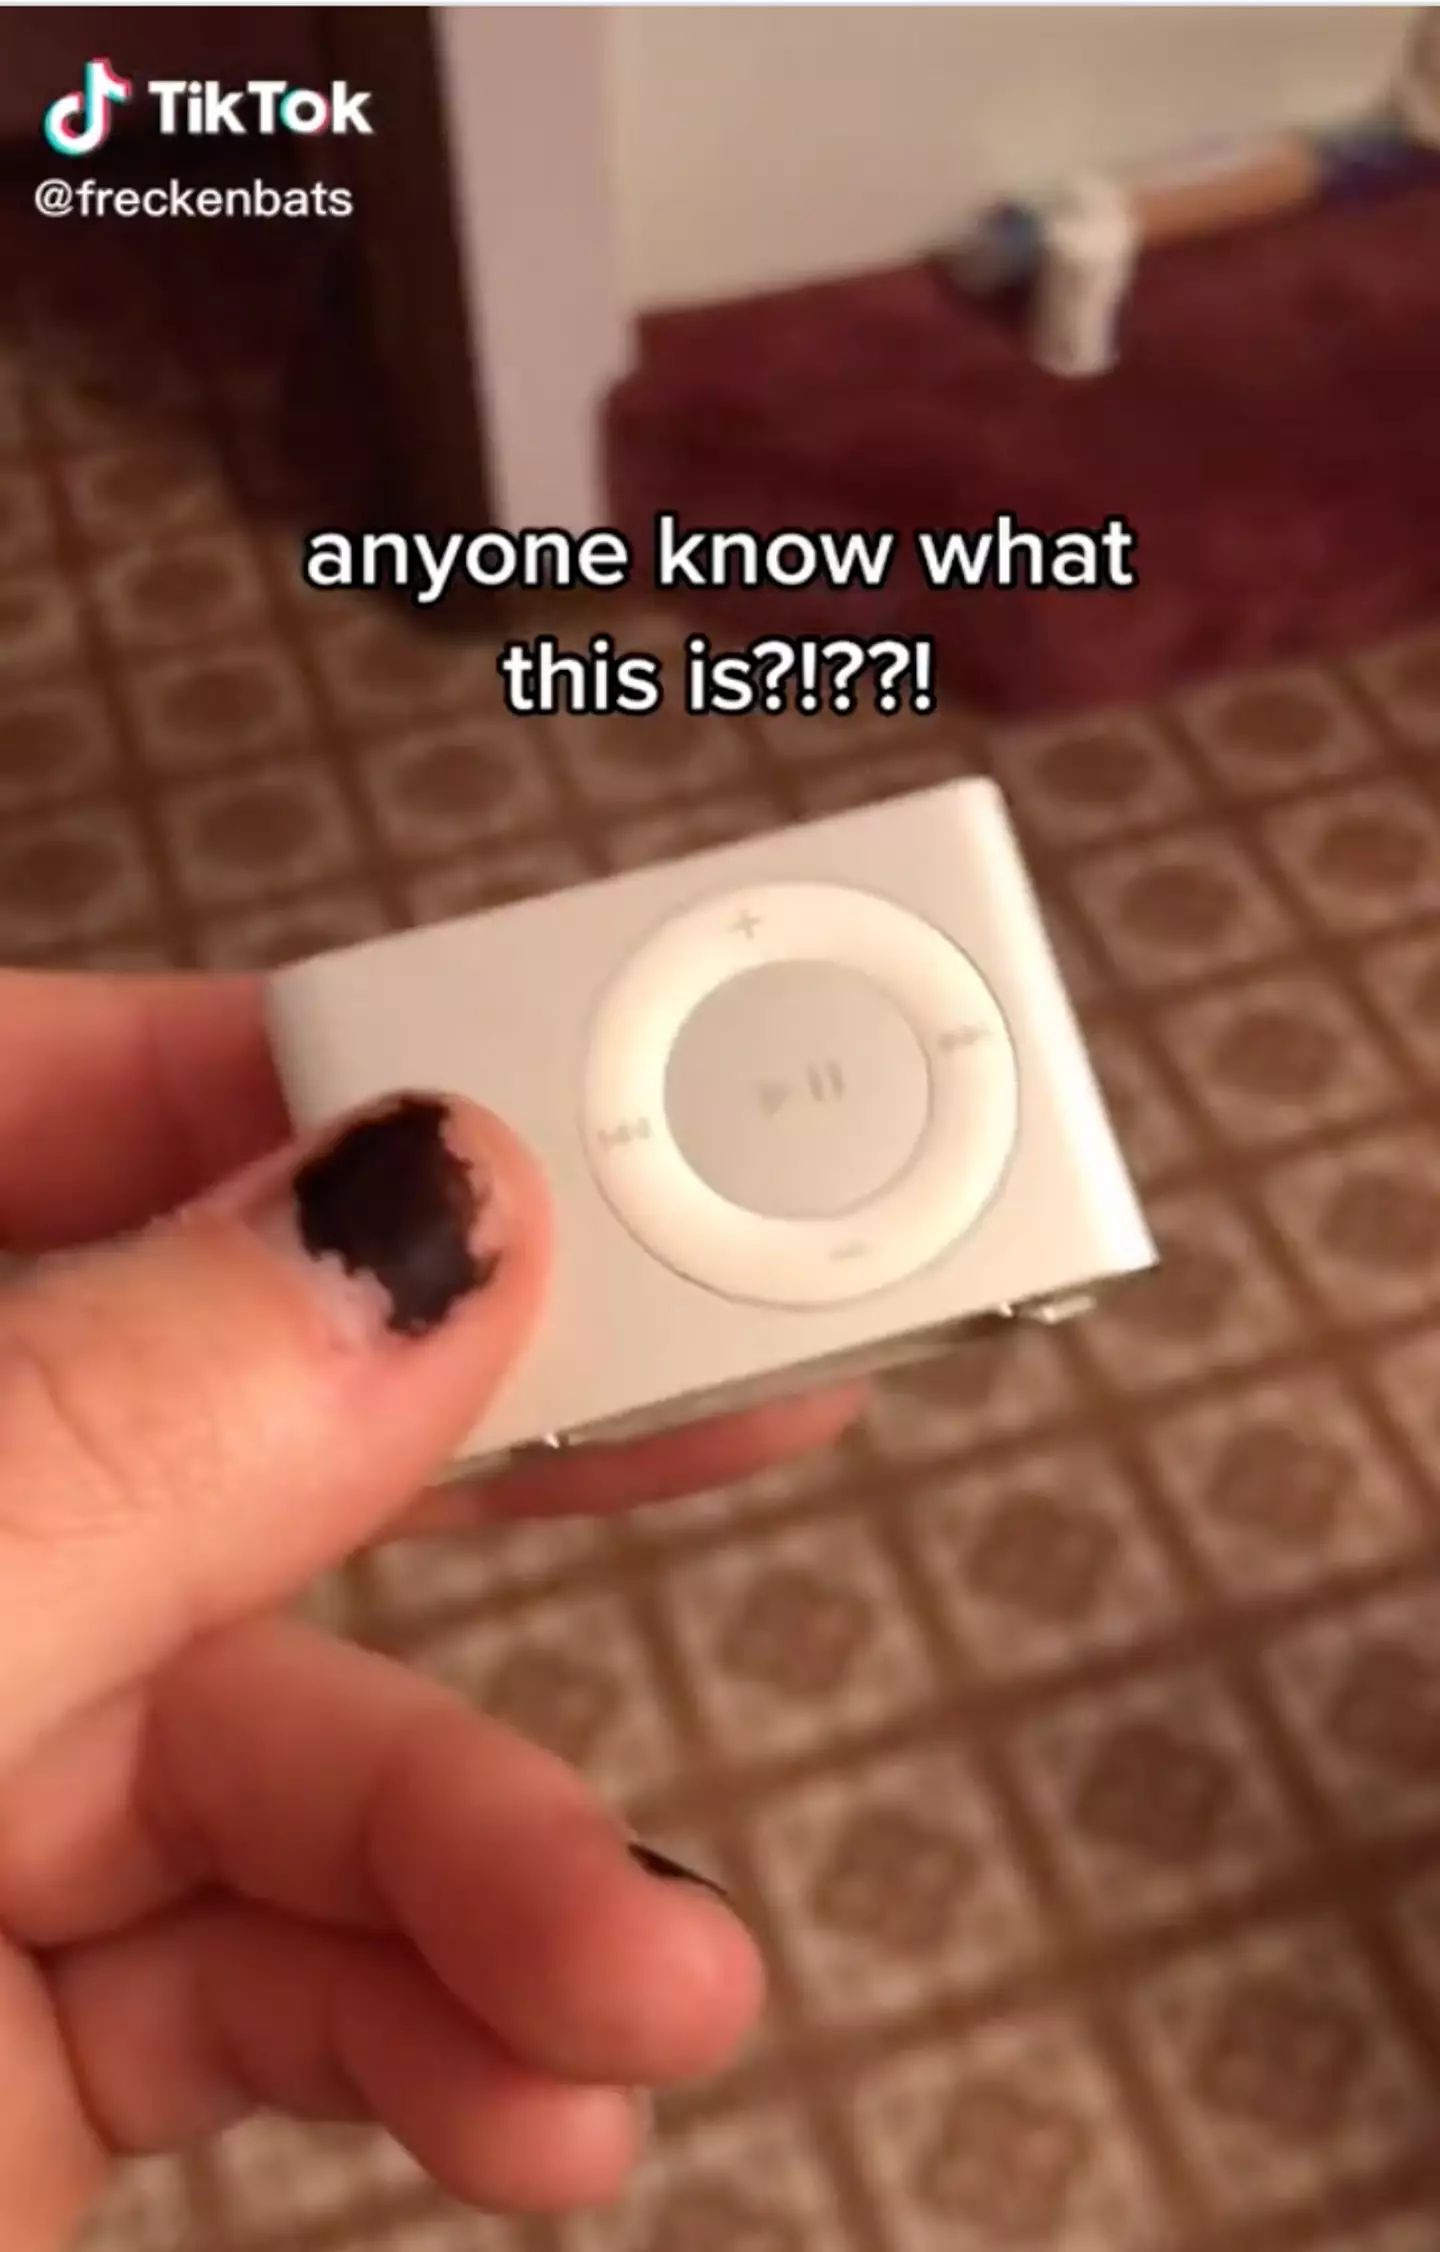 A TikToker found an iPod Shuffle (